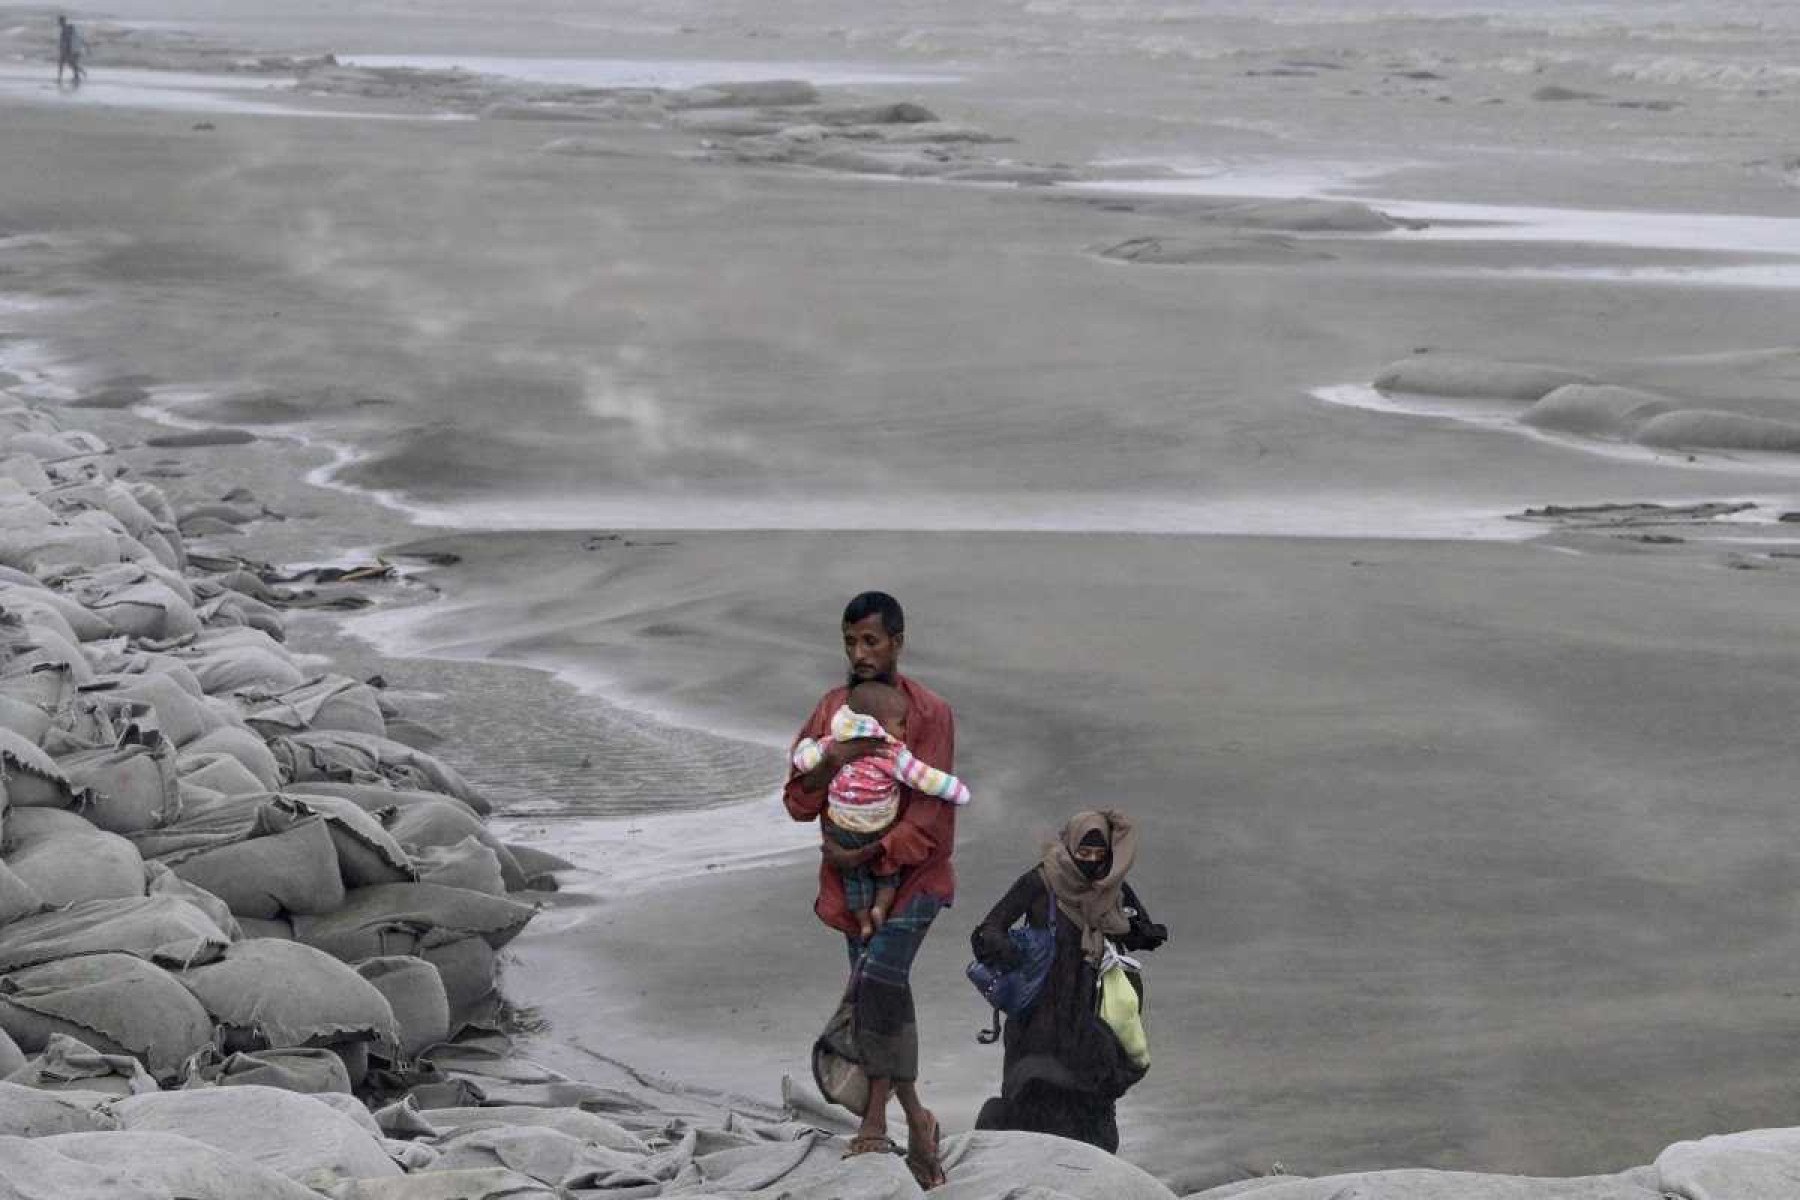 Ciclone deixa 10 mortos e 30 mil casas destruídas em Bangladesh